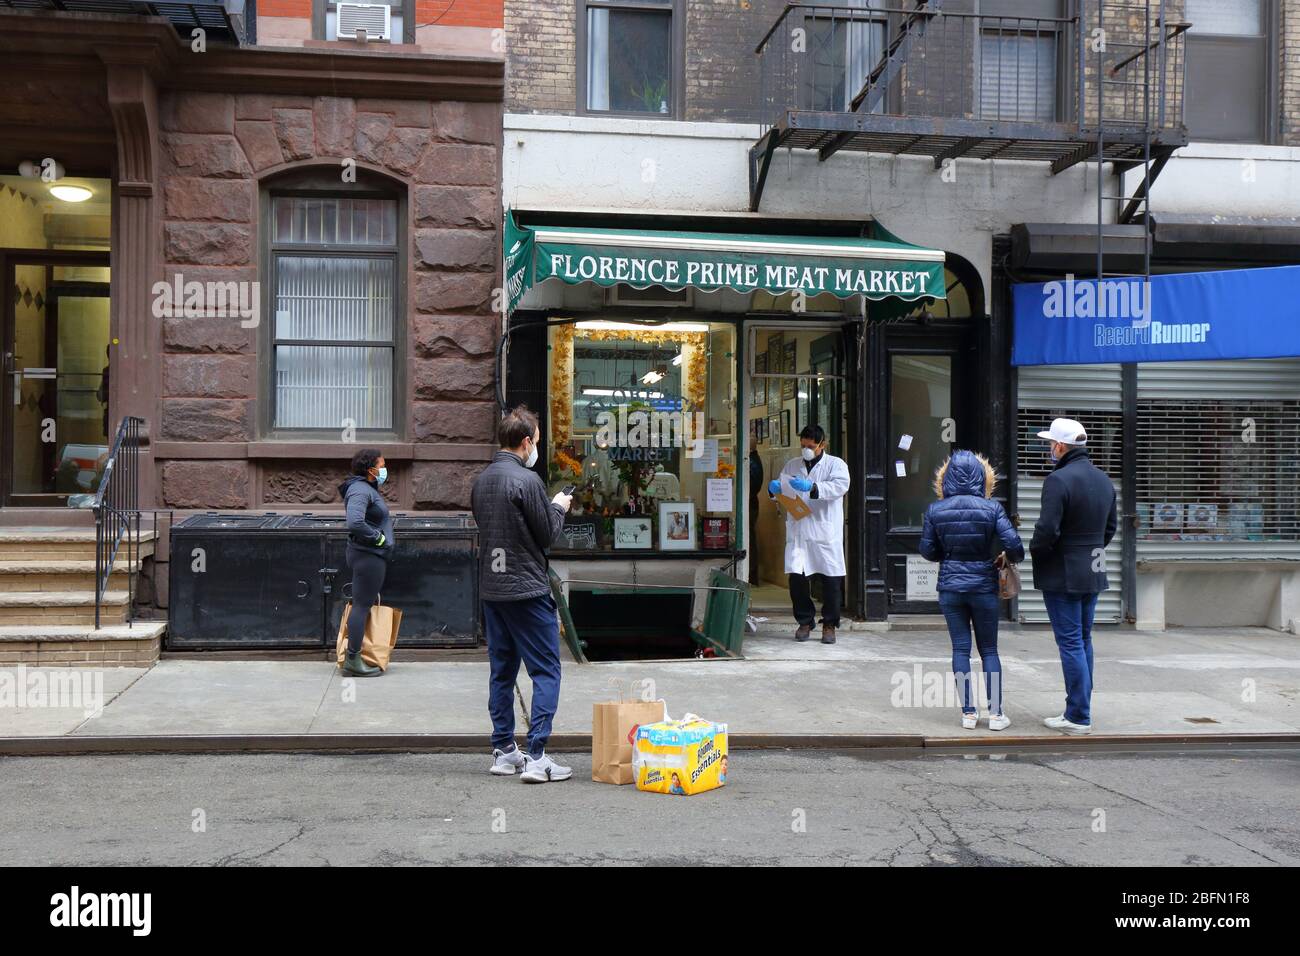 Les gens distanciation sociale et porter des masques pendant qu'ils attendent d'entrer dans un magasin de boucher pendant Coronavirus COVID-19. New York, le 18 avril 2020. Banque D'Images